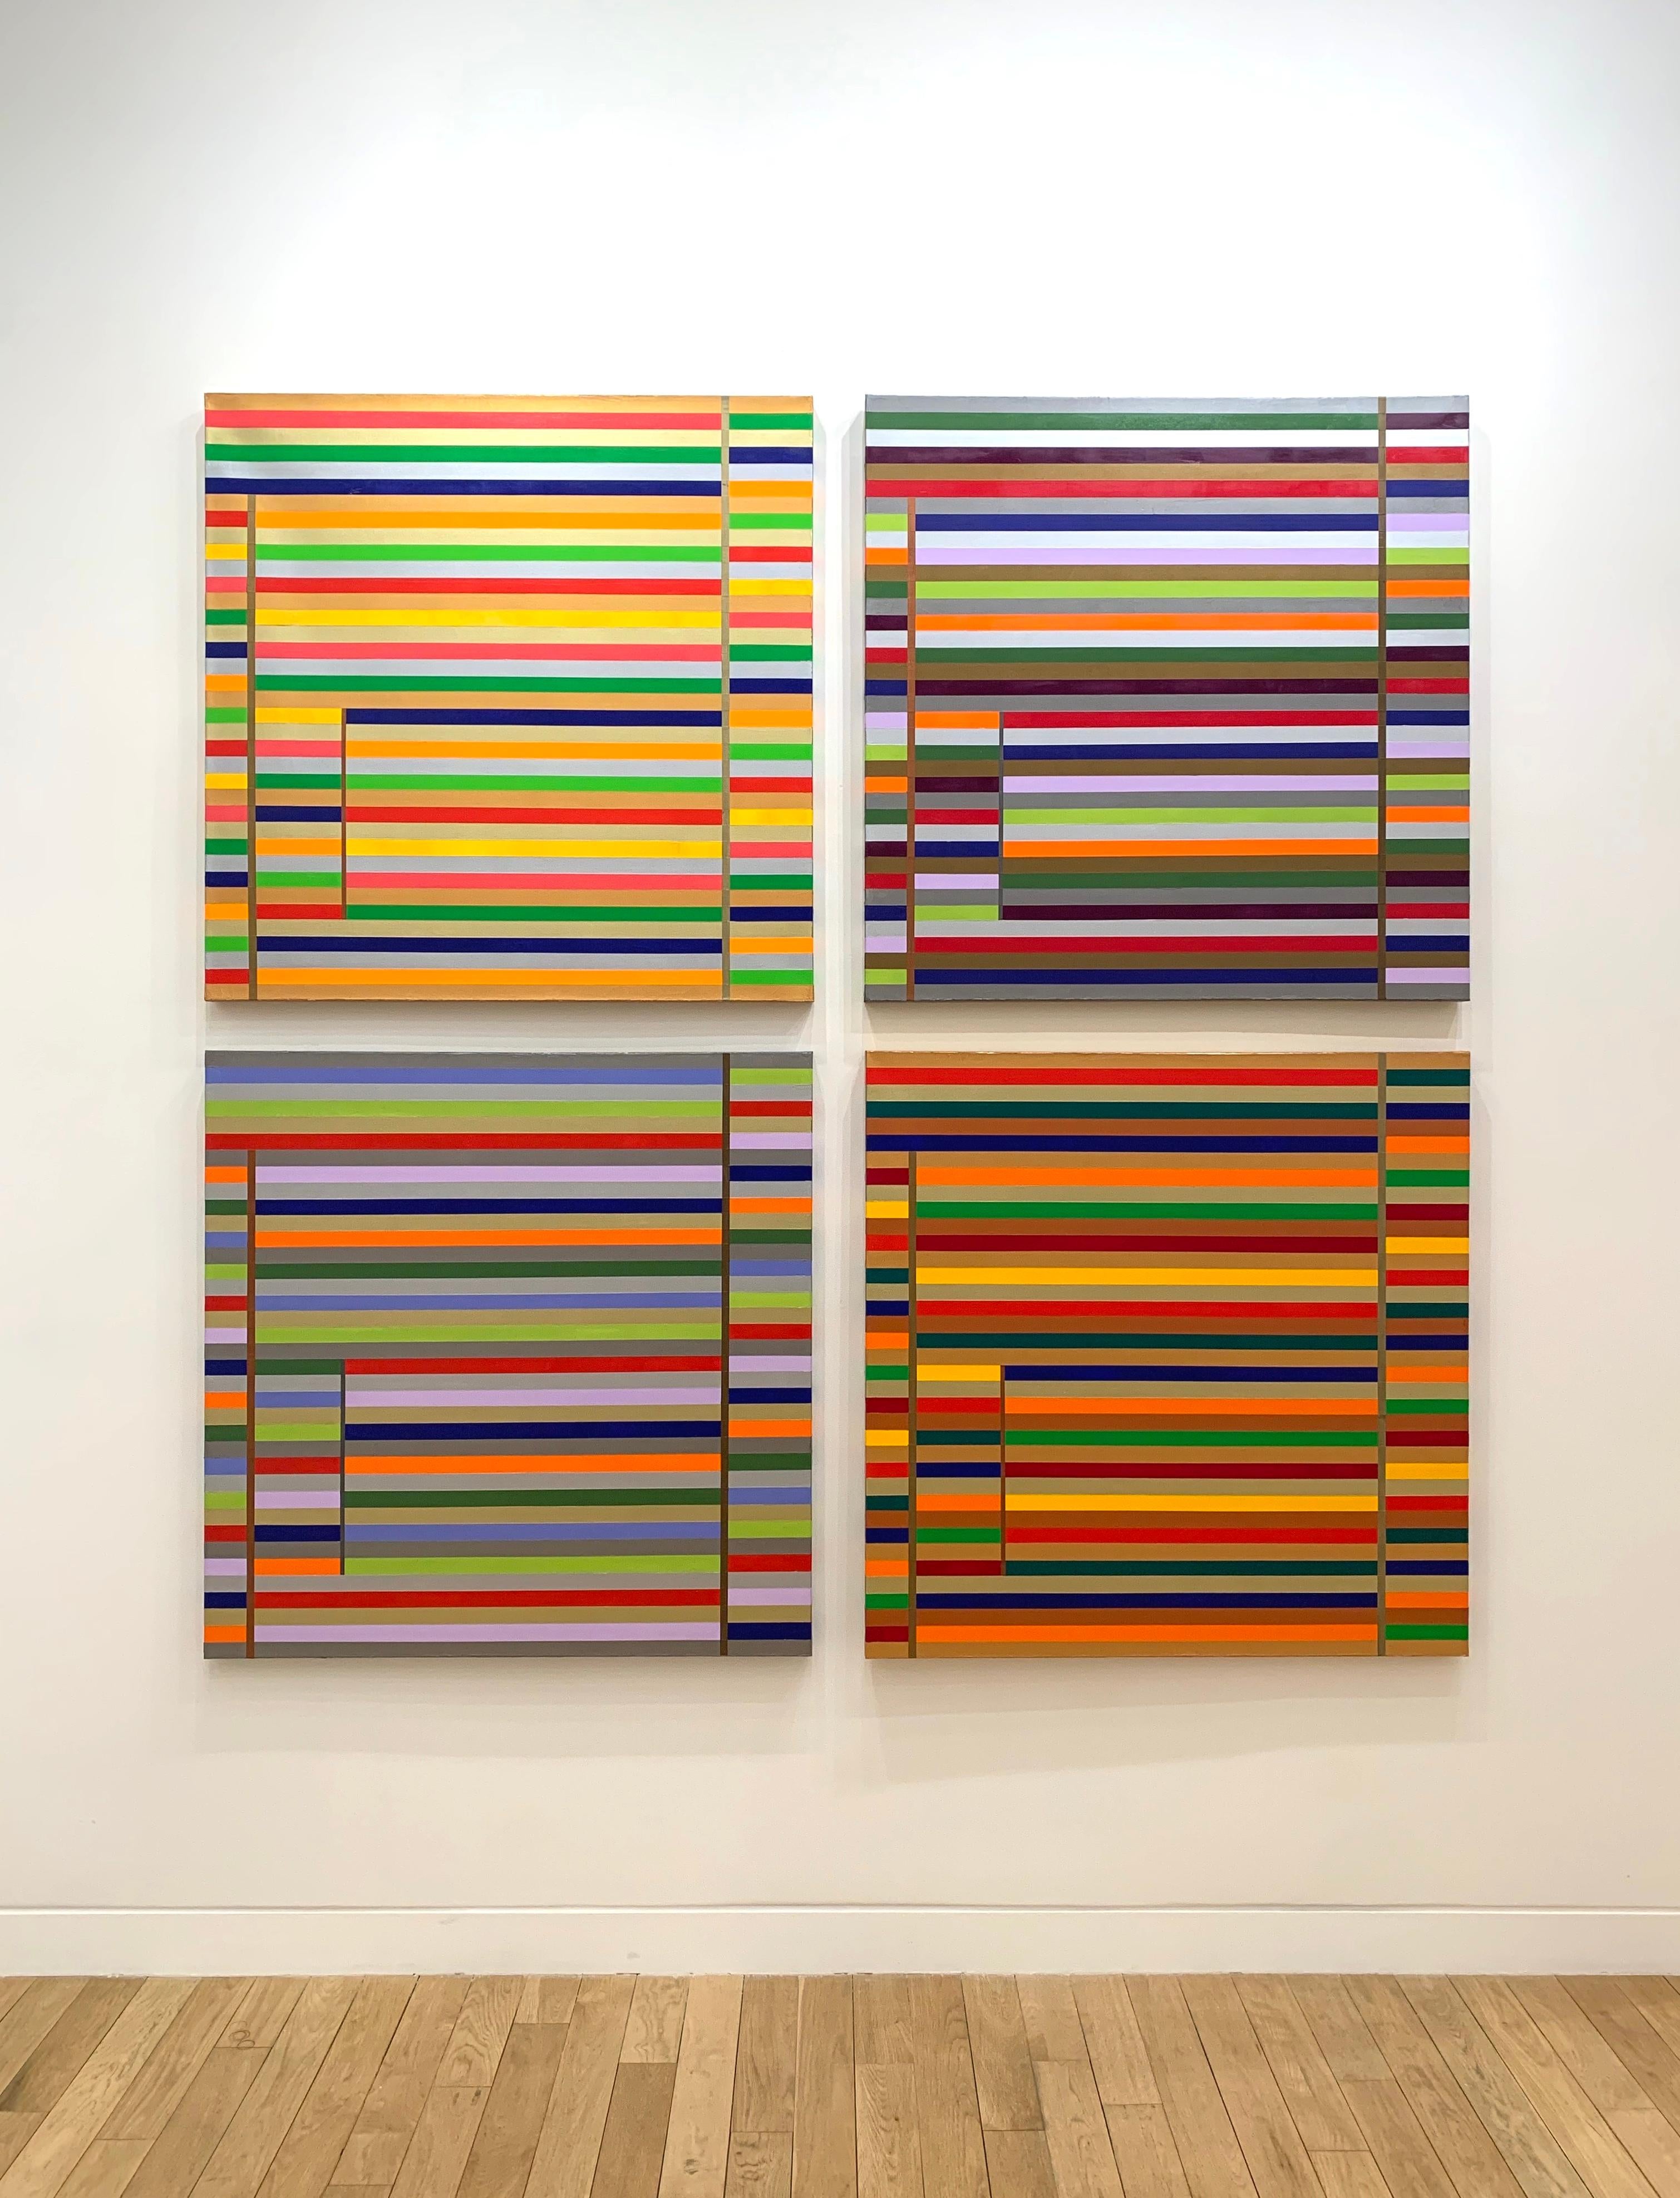 Osvaldo Mariscotti Abstract Painting - Four Seasons III